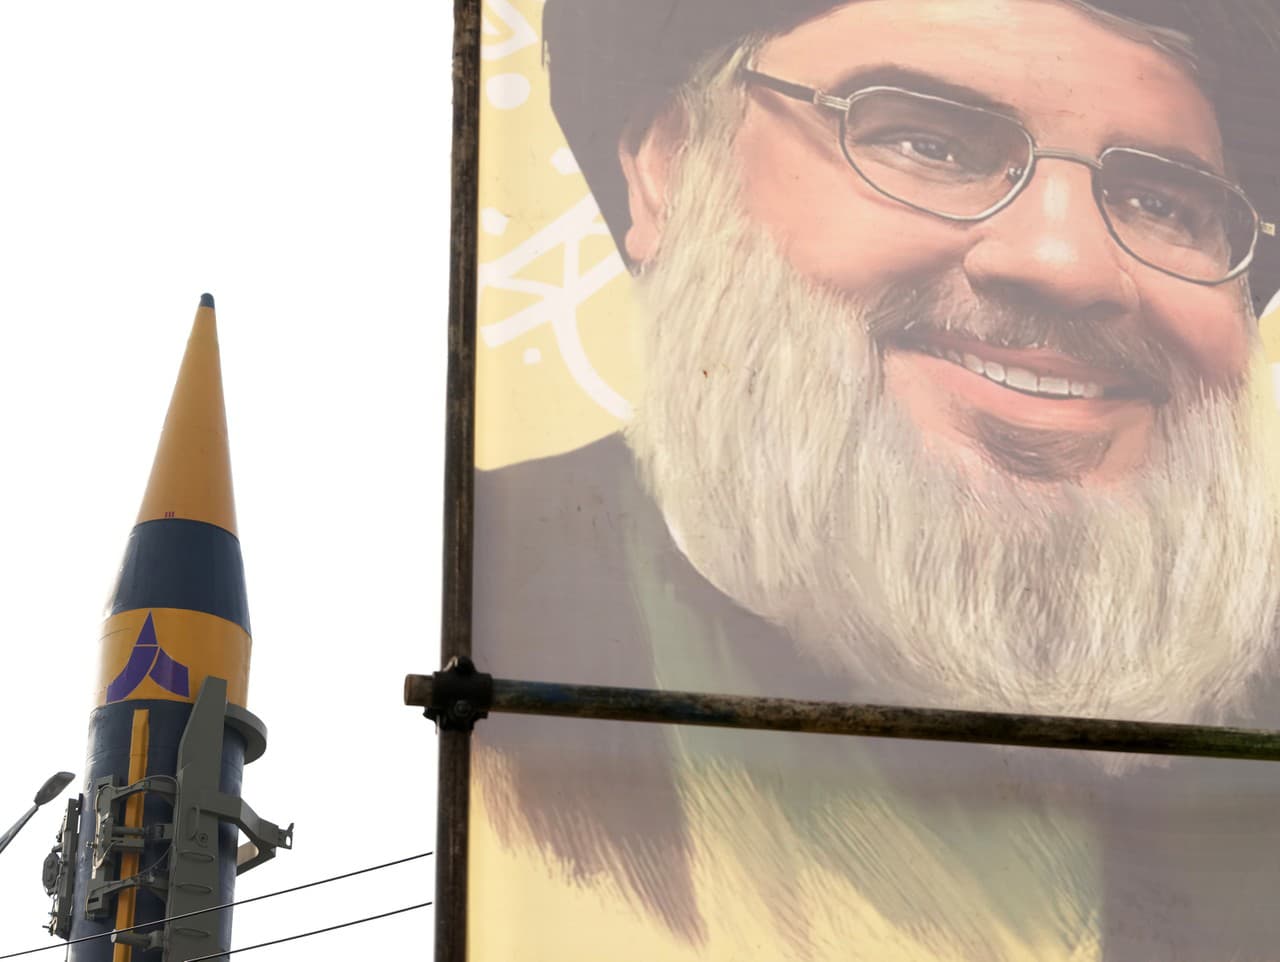 Iránska raketa domácej výroby je vystavená pred portrétom vodcu libanonského hnutia Hizballáh Sajjida Hasana Nasralláha